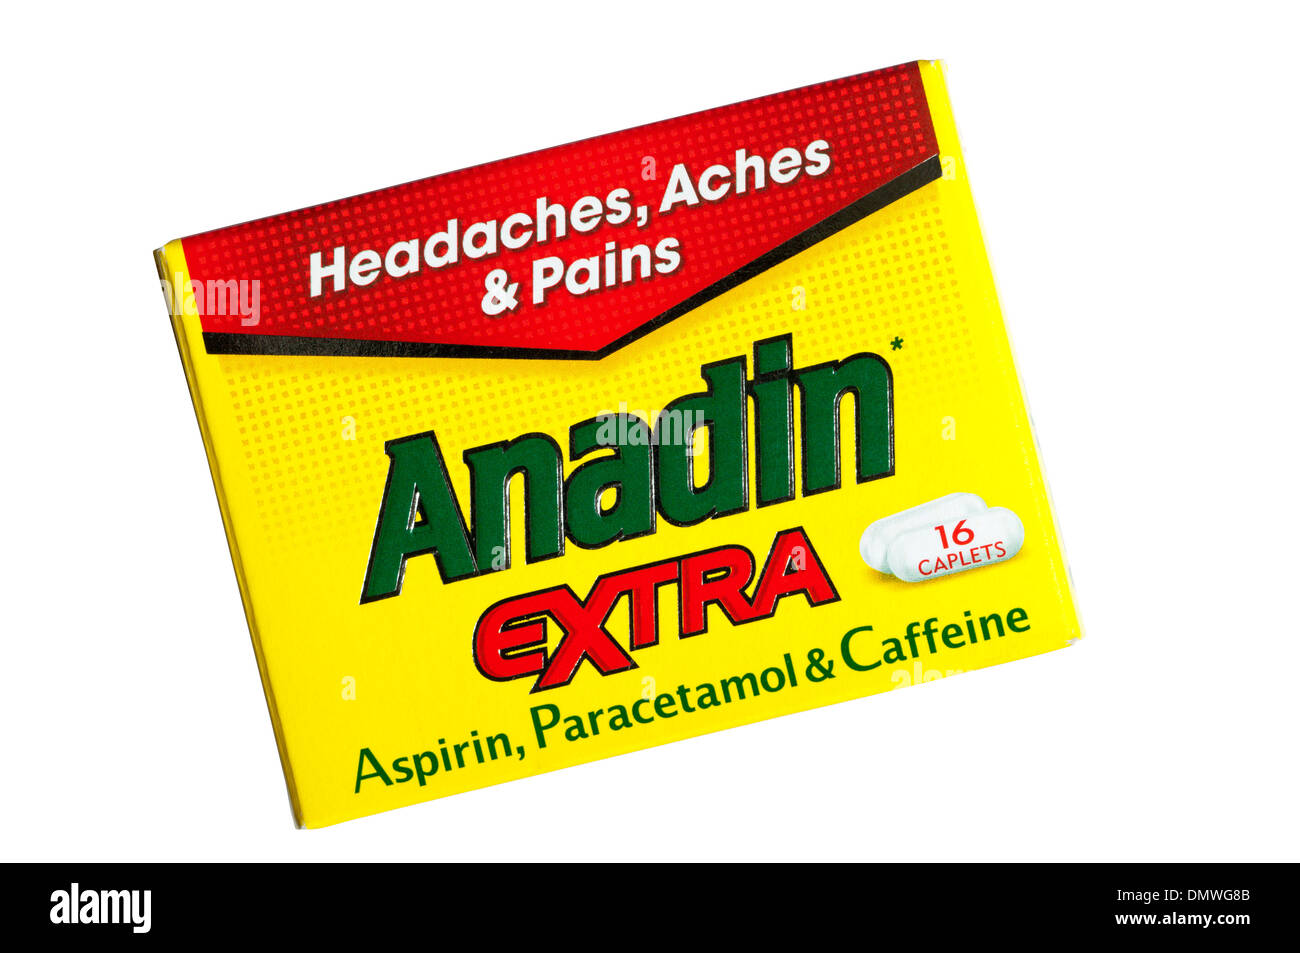 Un cuadro de Anadin extra para el alivio de dolores de cabeza, dolores y dolores. Foto de stock